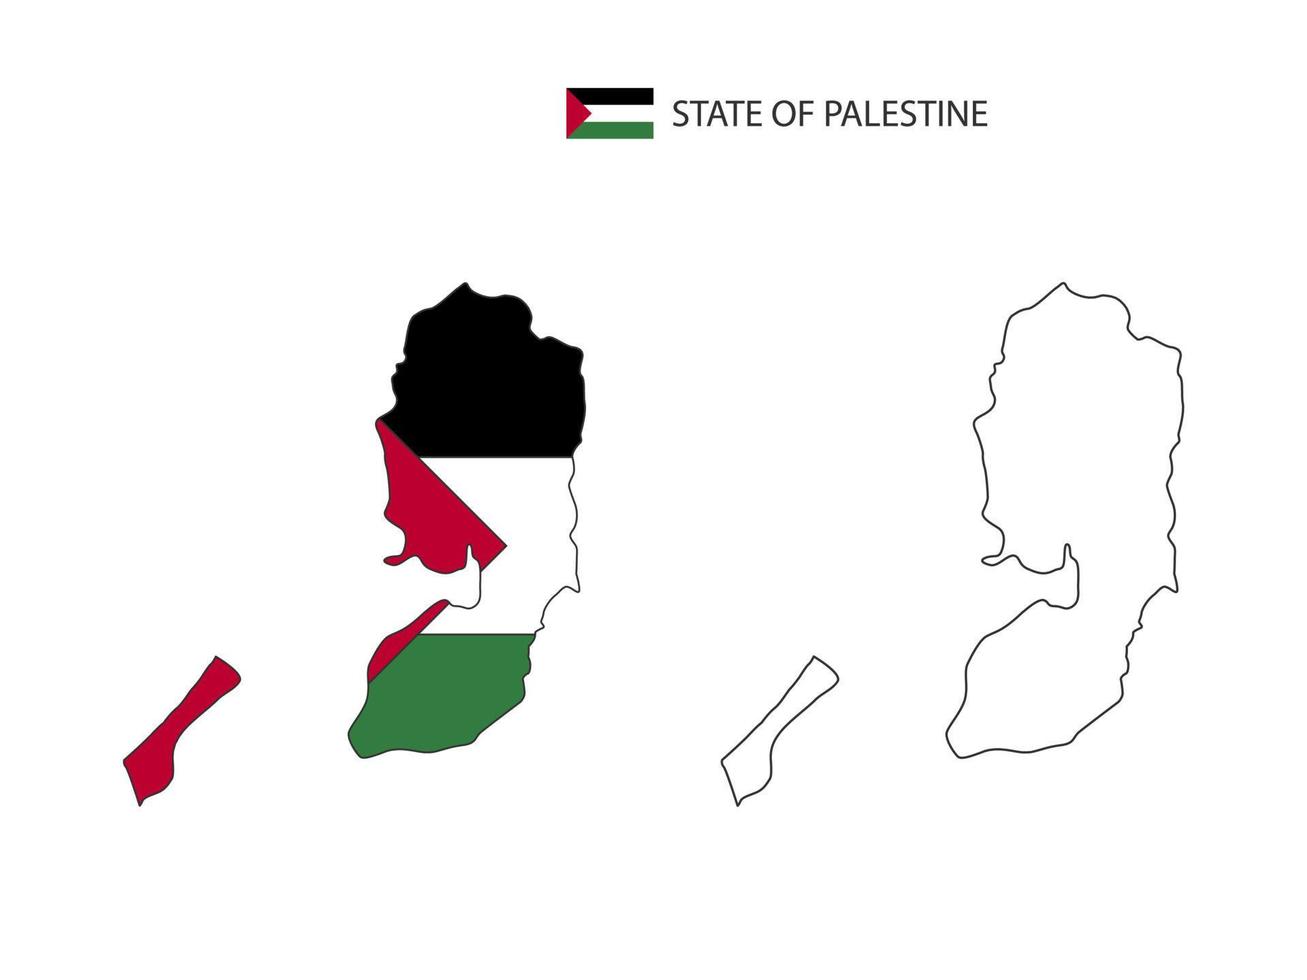 état du vecteur de ville de carte de palestine divisé par le style de simplicité de contour. ont 2 versions, la version en ligne fine noire et la couleur de la version du drapeau du pays. les deux cartes étaient sur fond blanc.